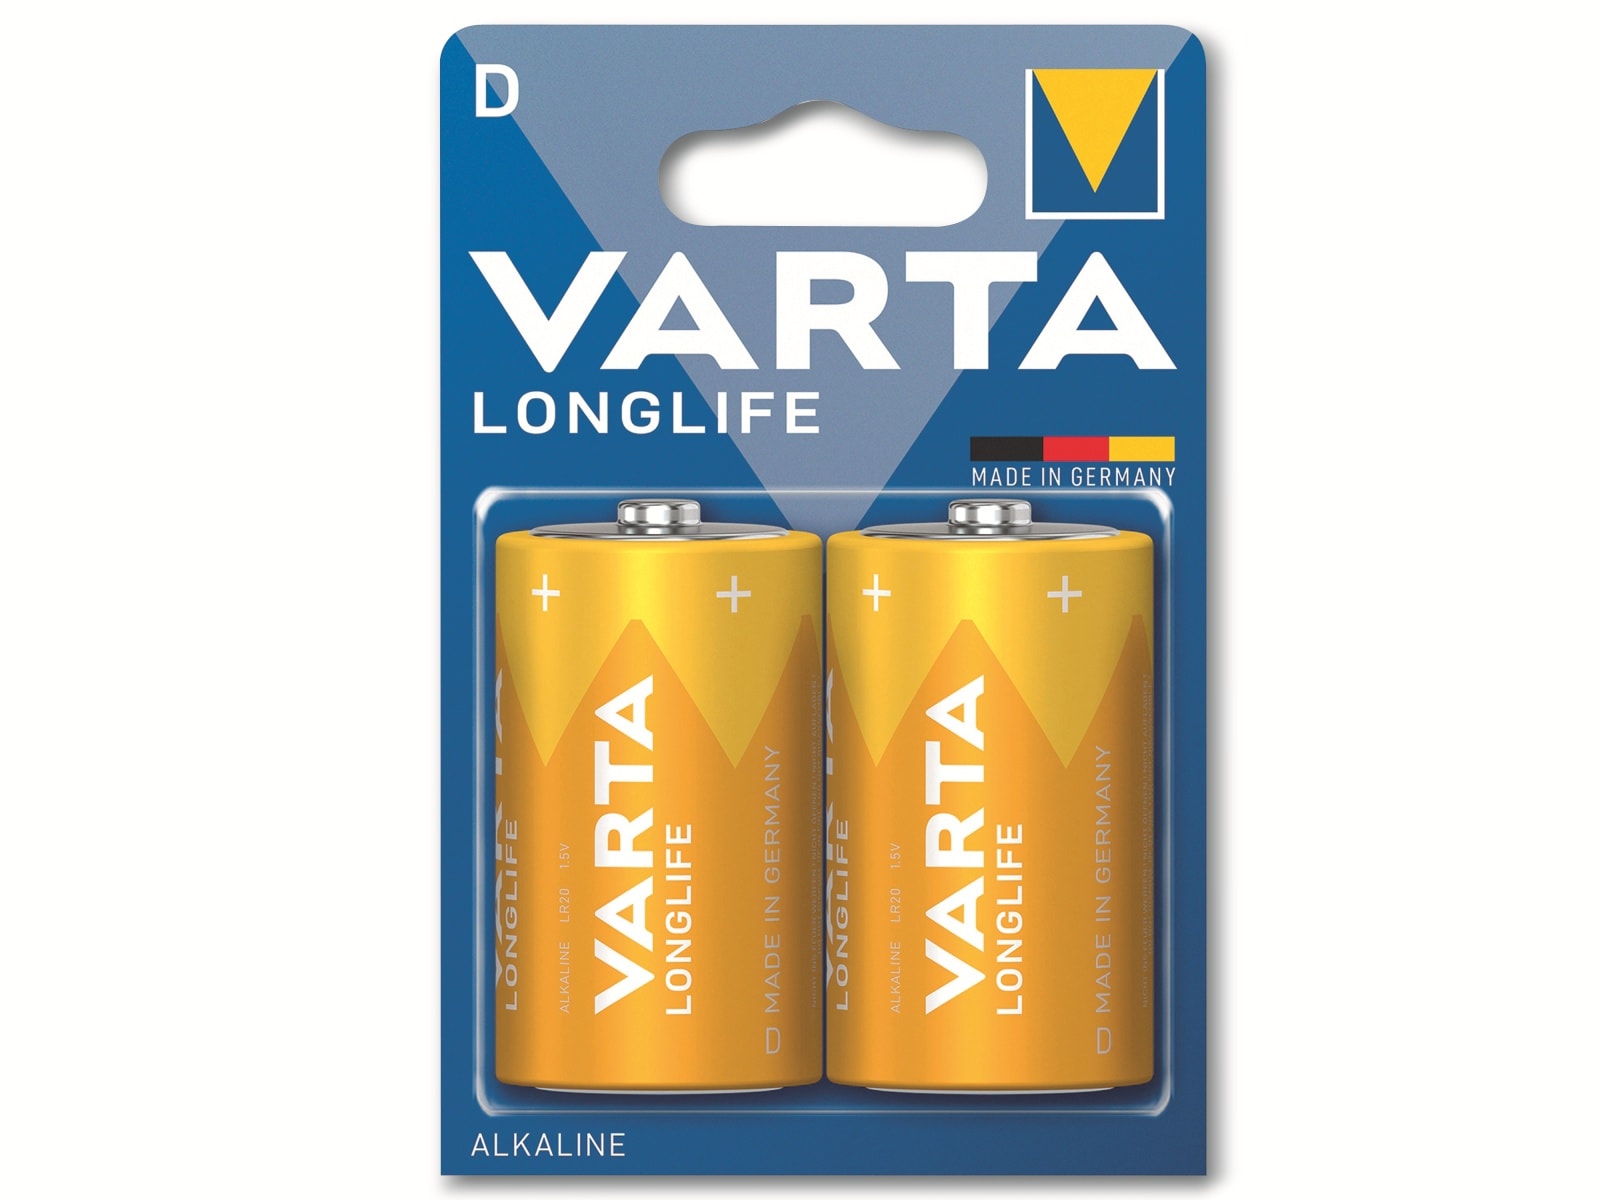 VARTA Batterie Alkaline, Mono, D, LR20, 1.5V, Longlife, 2 Stück